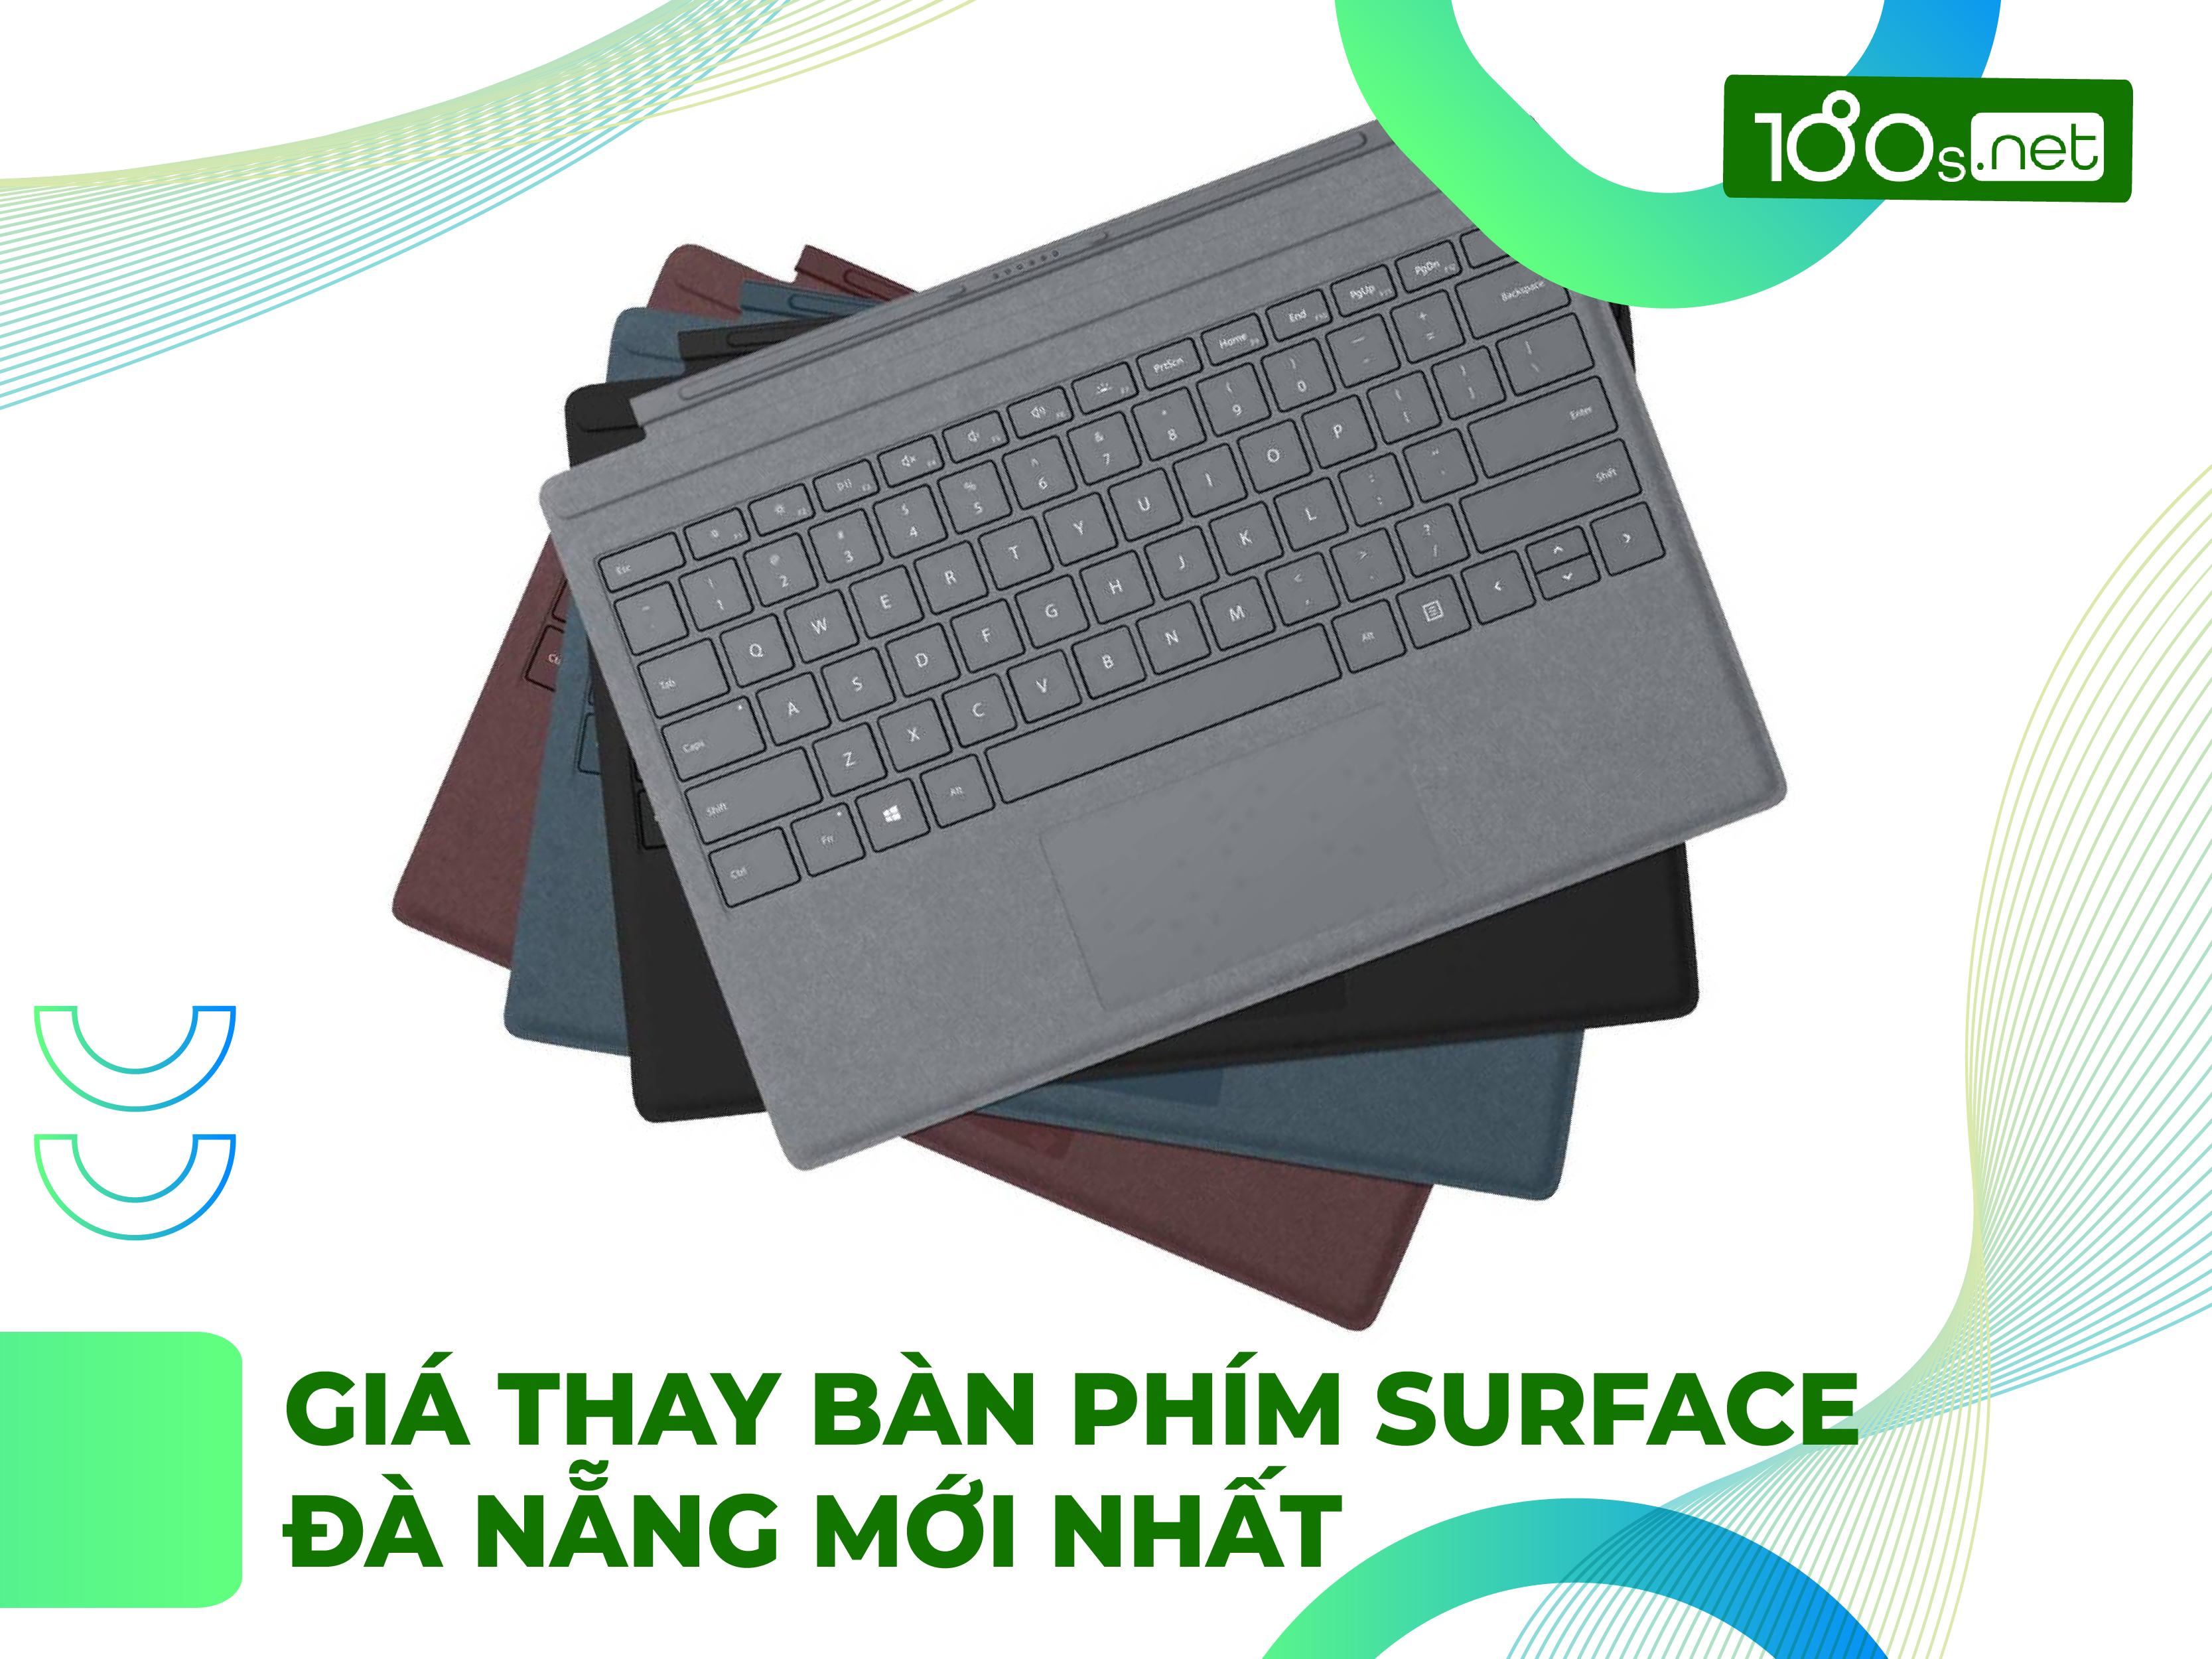 Giá thay bàn phím Surface Đà Nẵng mới nhất